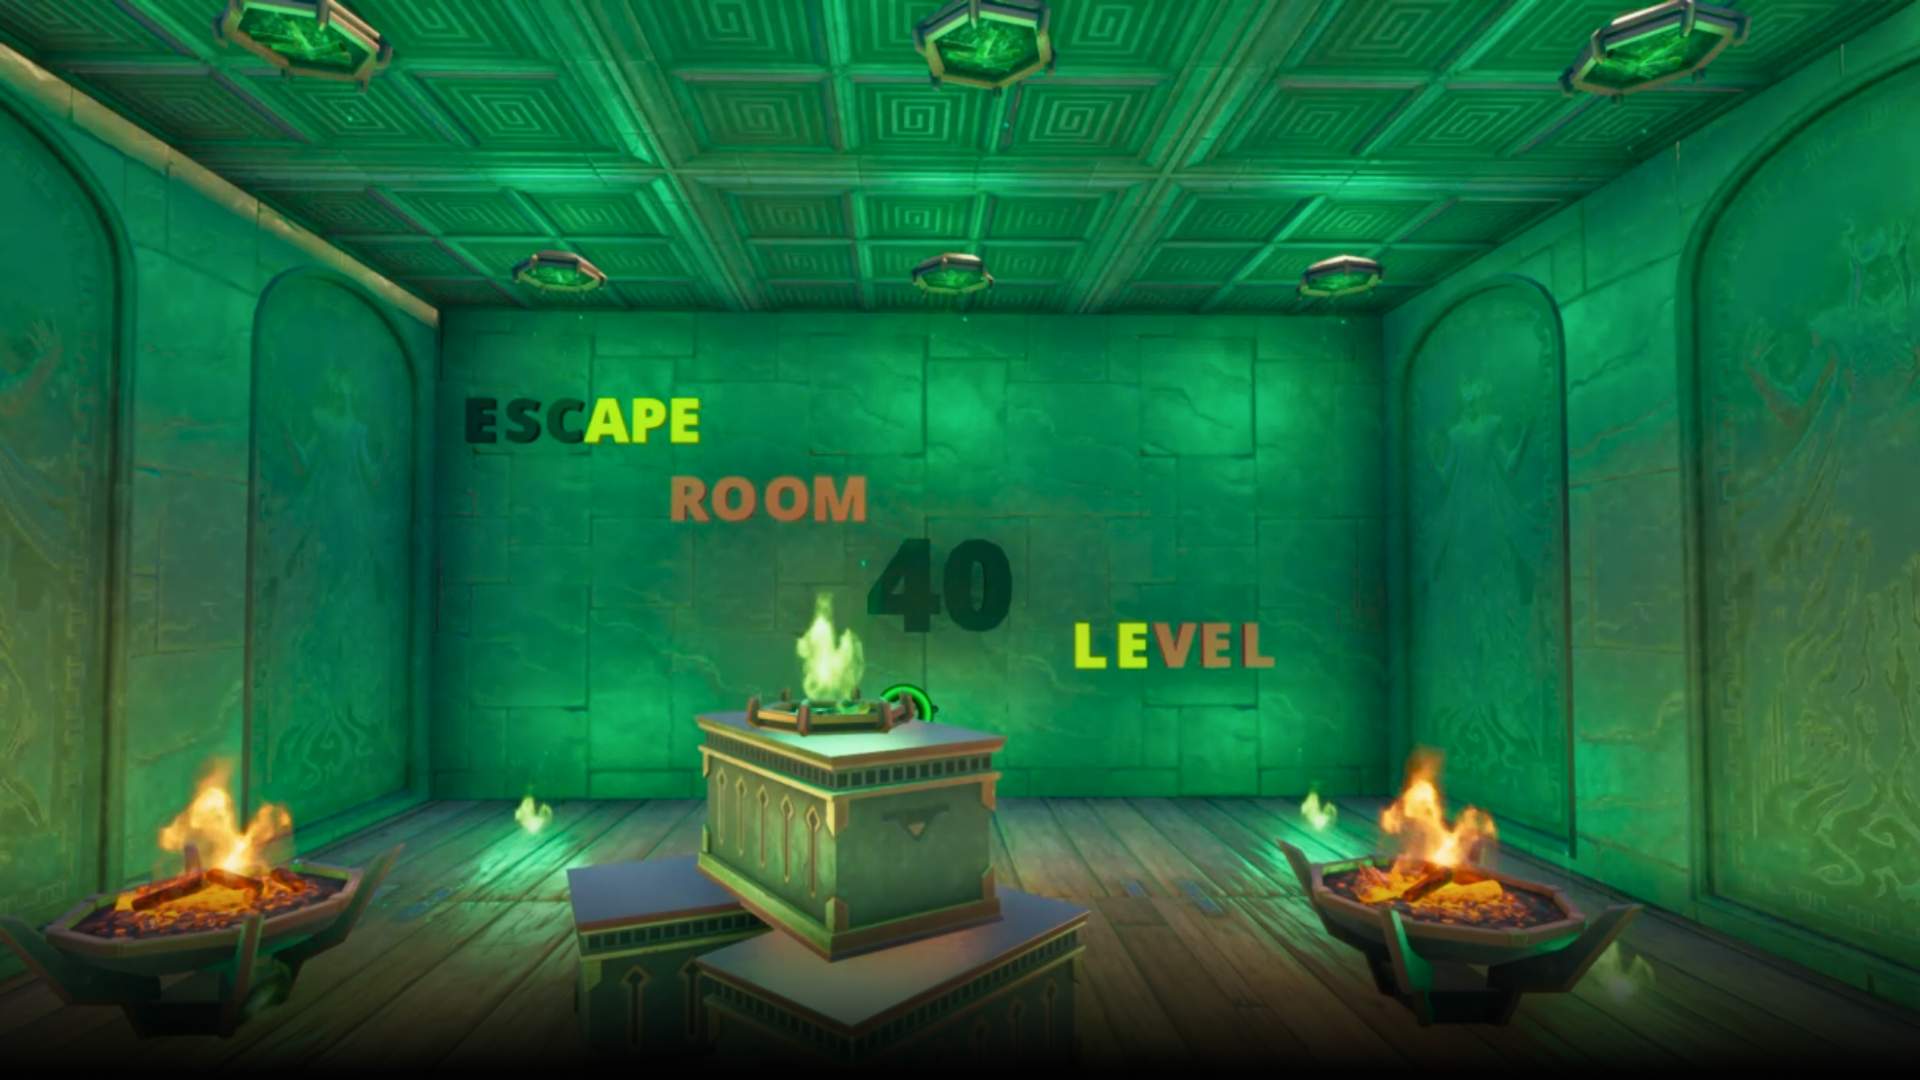 Escape room 40 LEVEL